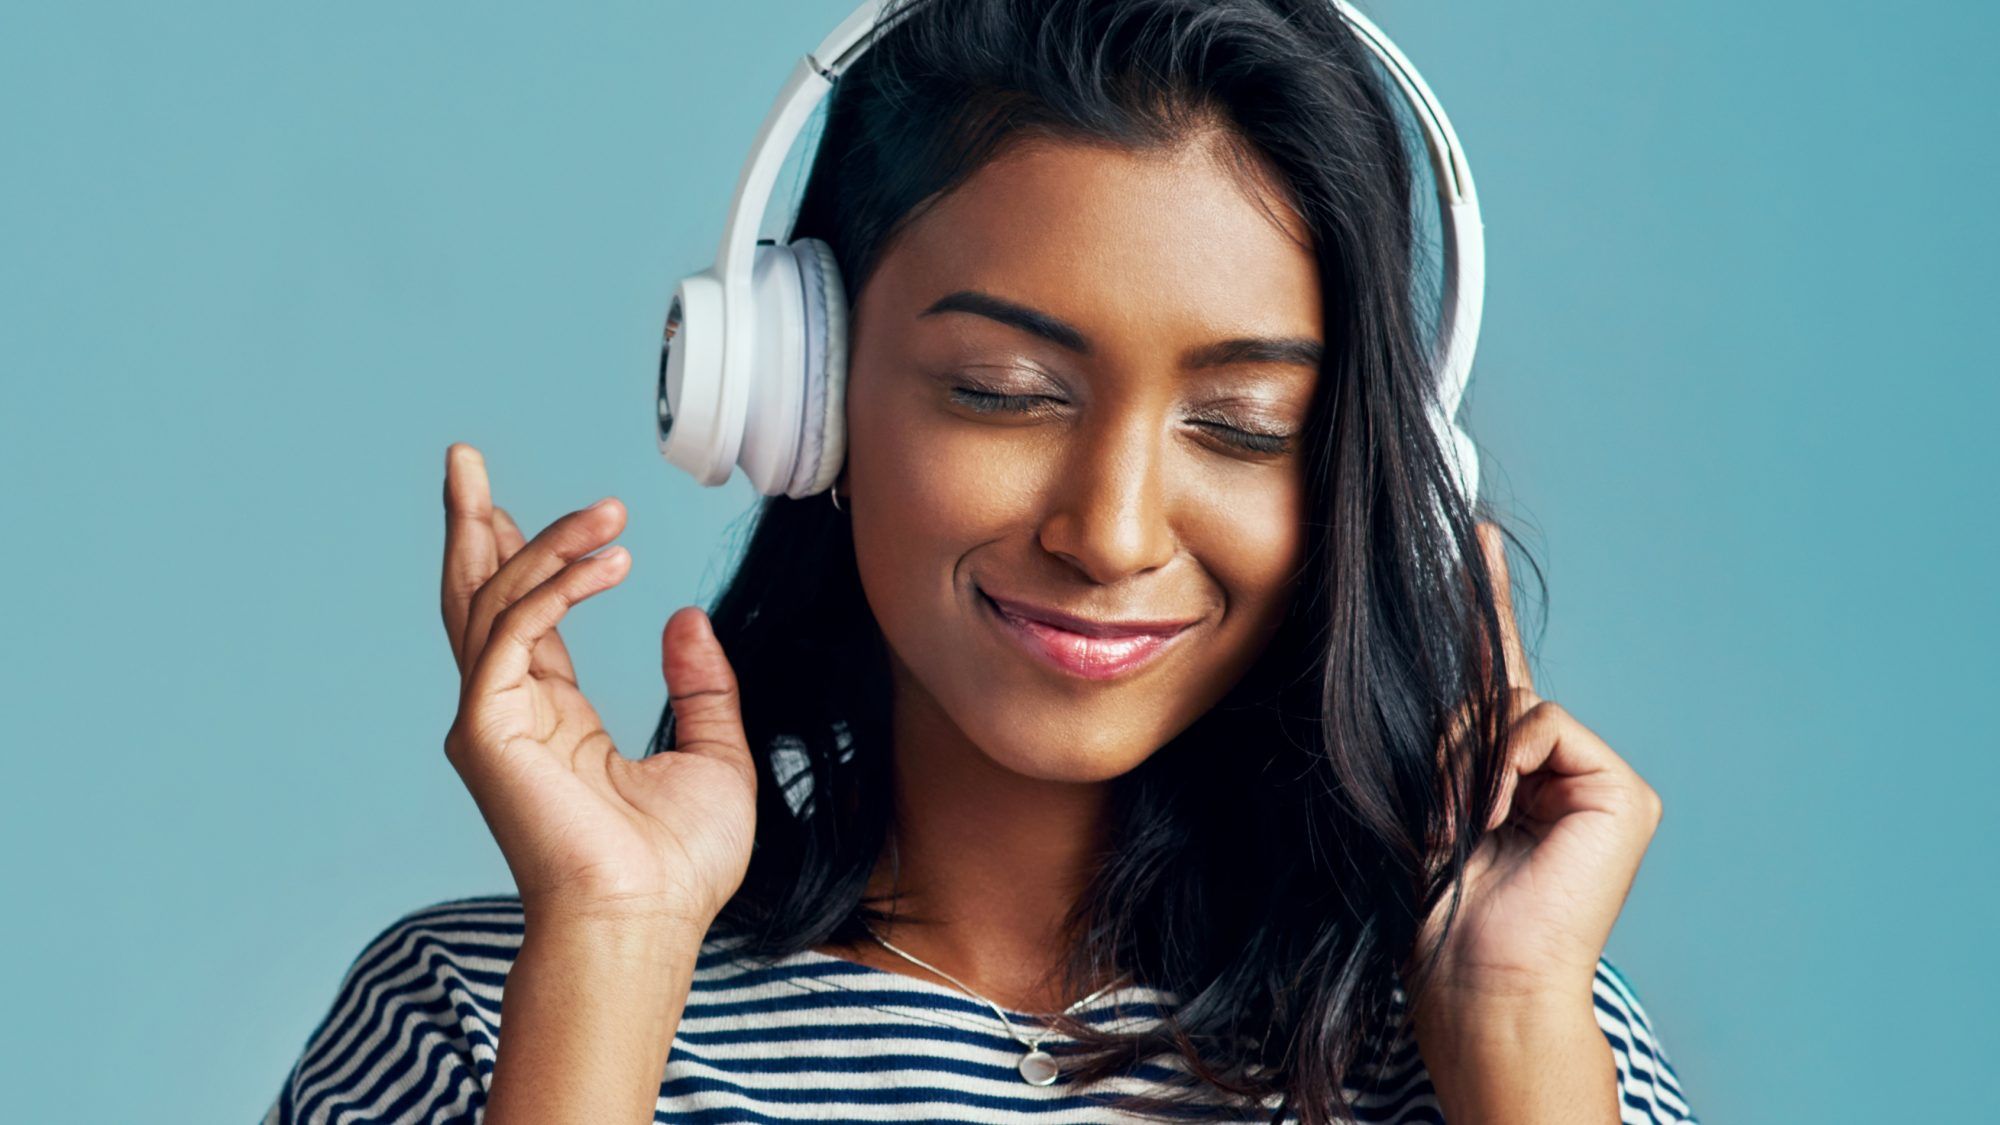 المدونات الصوتية لأسلوب الحياة الصحي من أجل التحفيز: امرأة تحمل سماعات رأس تستمع إلى البودكاست